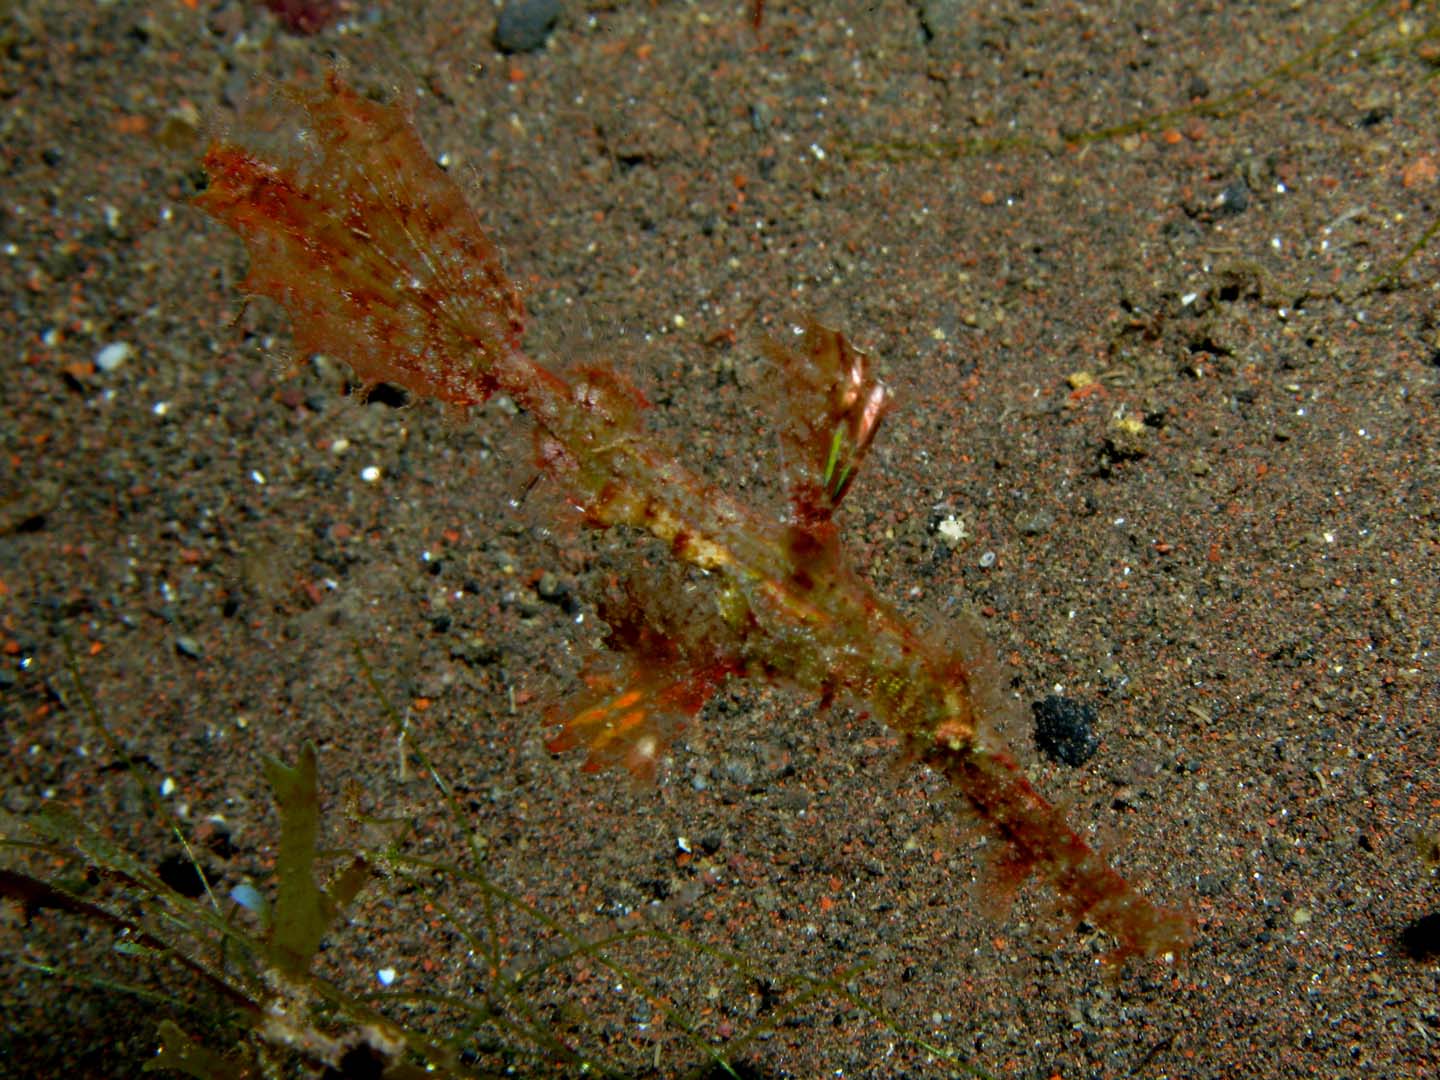 Juvenile gosh pipefish